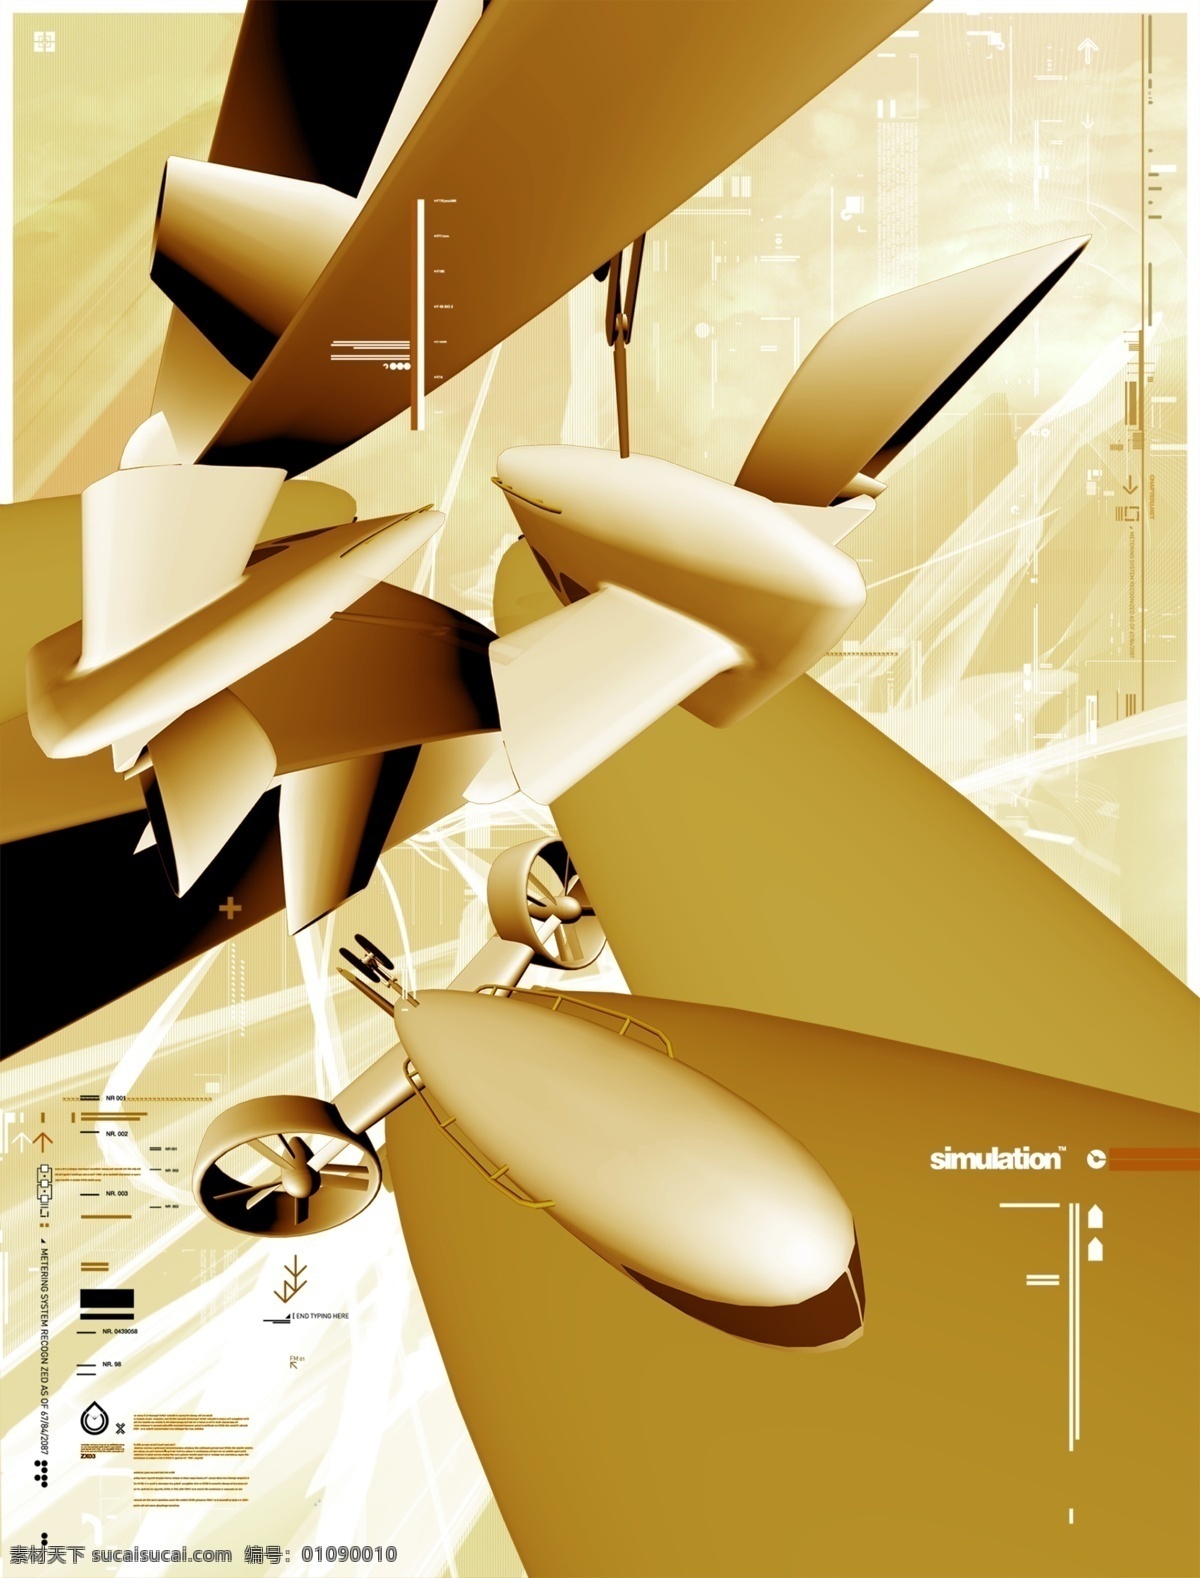 太空 模型 数码 游戏背景 分层 3d 抽象 底纹 动感 航天飞机 后现代 科技 力量 梦幻 外太空 游戏背景设计 前卫 异度空间 速度 艺术 张力 原创设计 原创3d模型